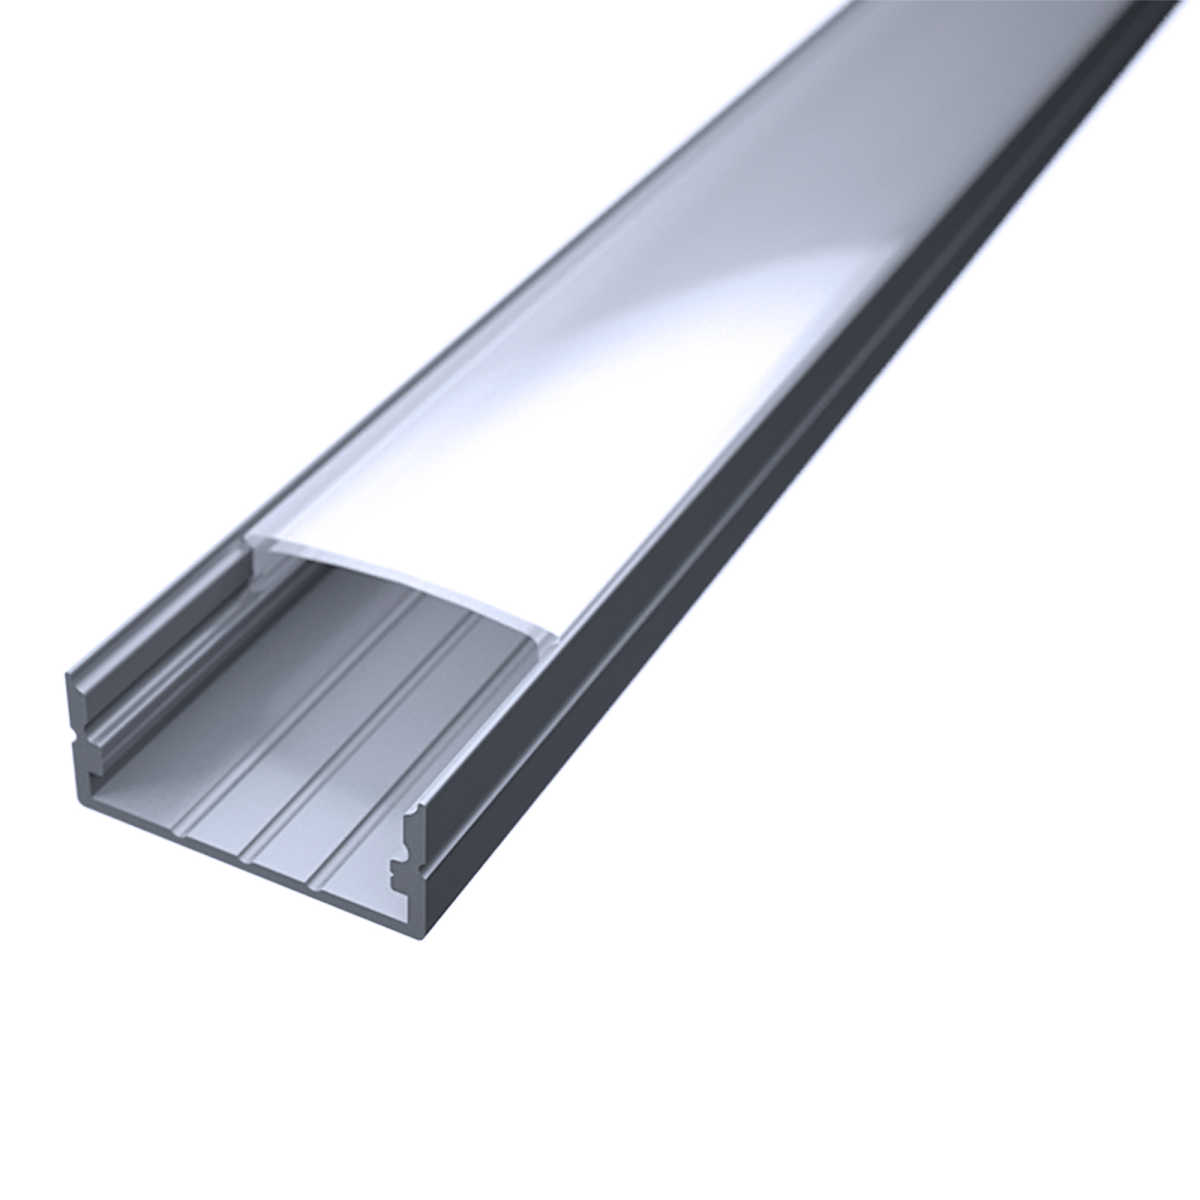 LED Flachprofil "Slim-Line max" | Abdeckung diffus | Zuschnitt auf 54cm |